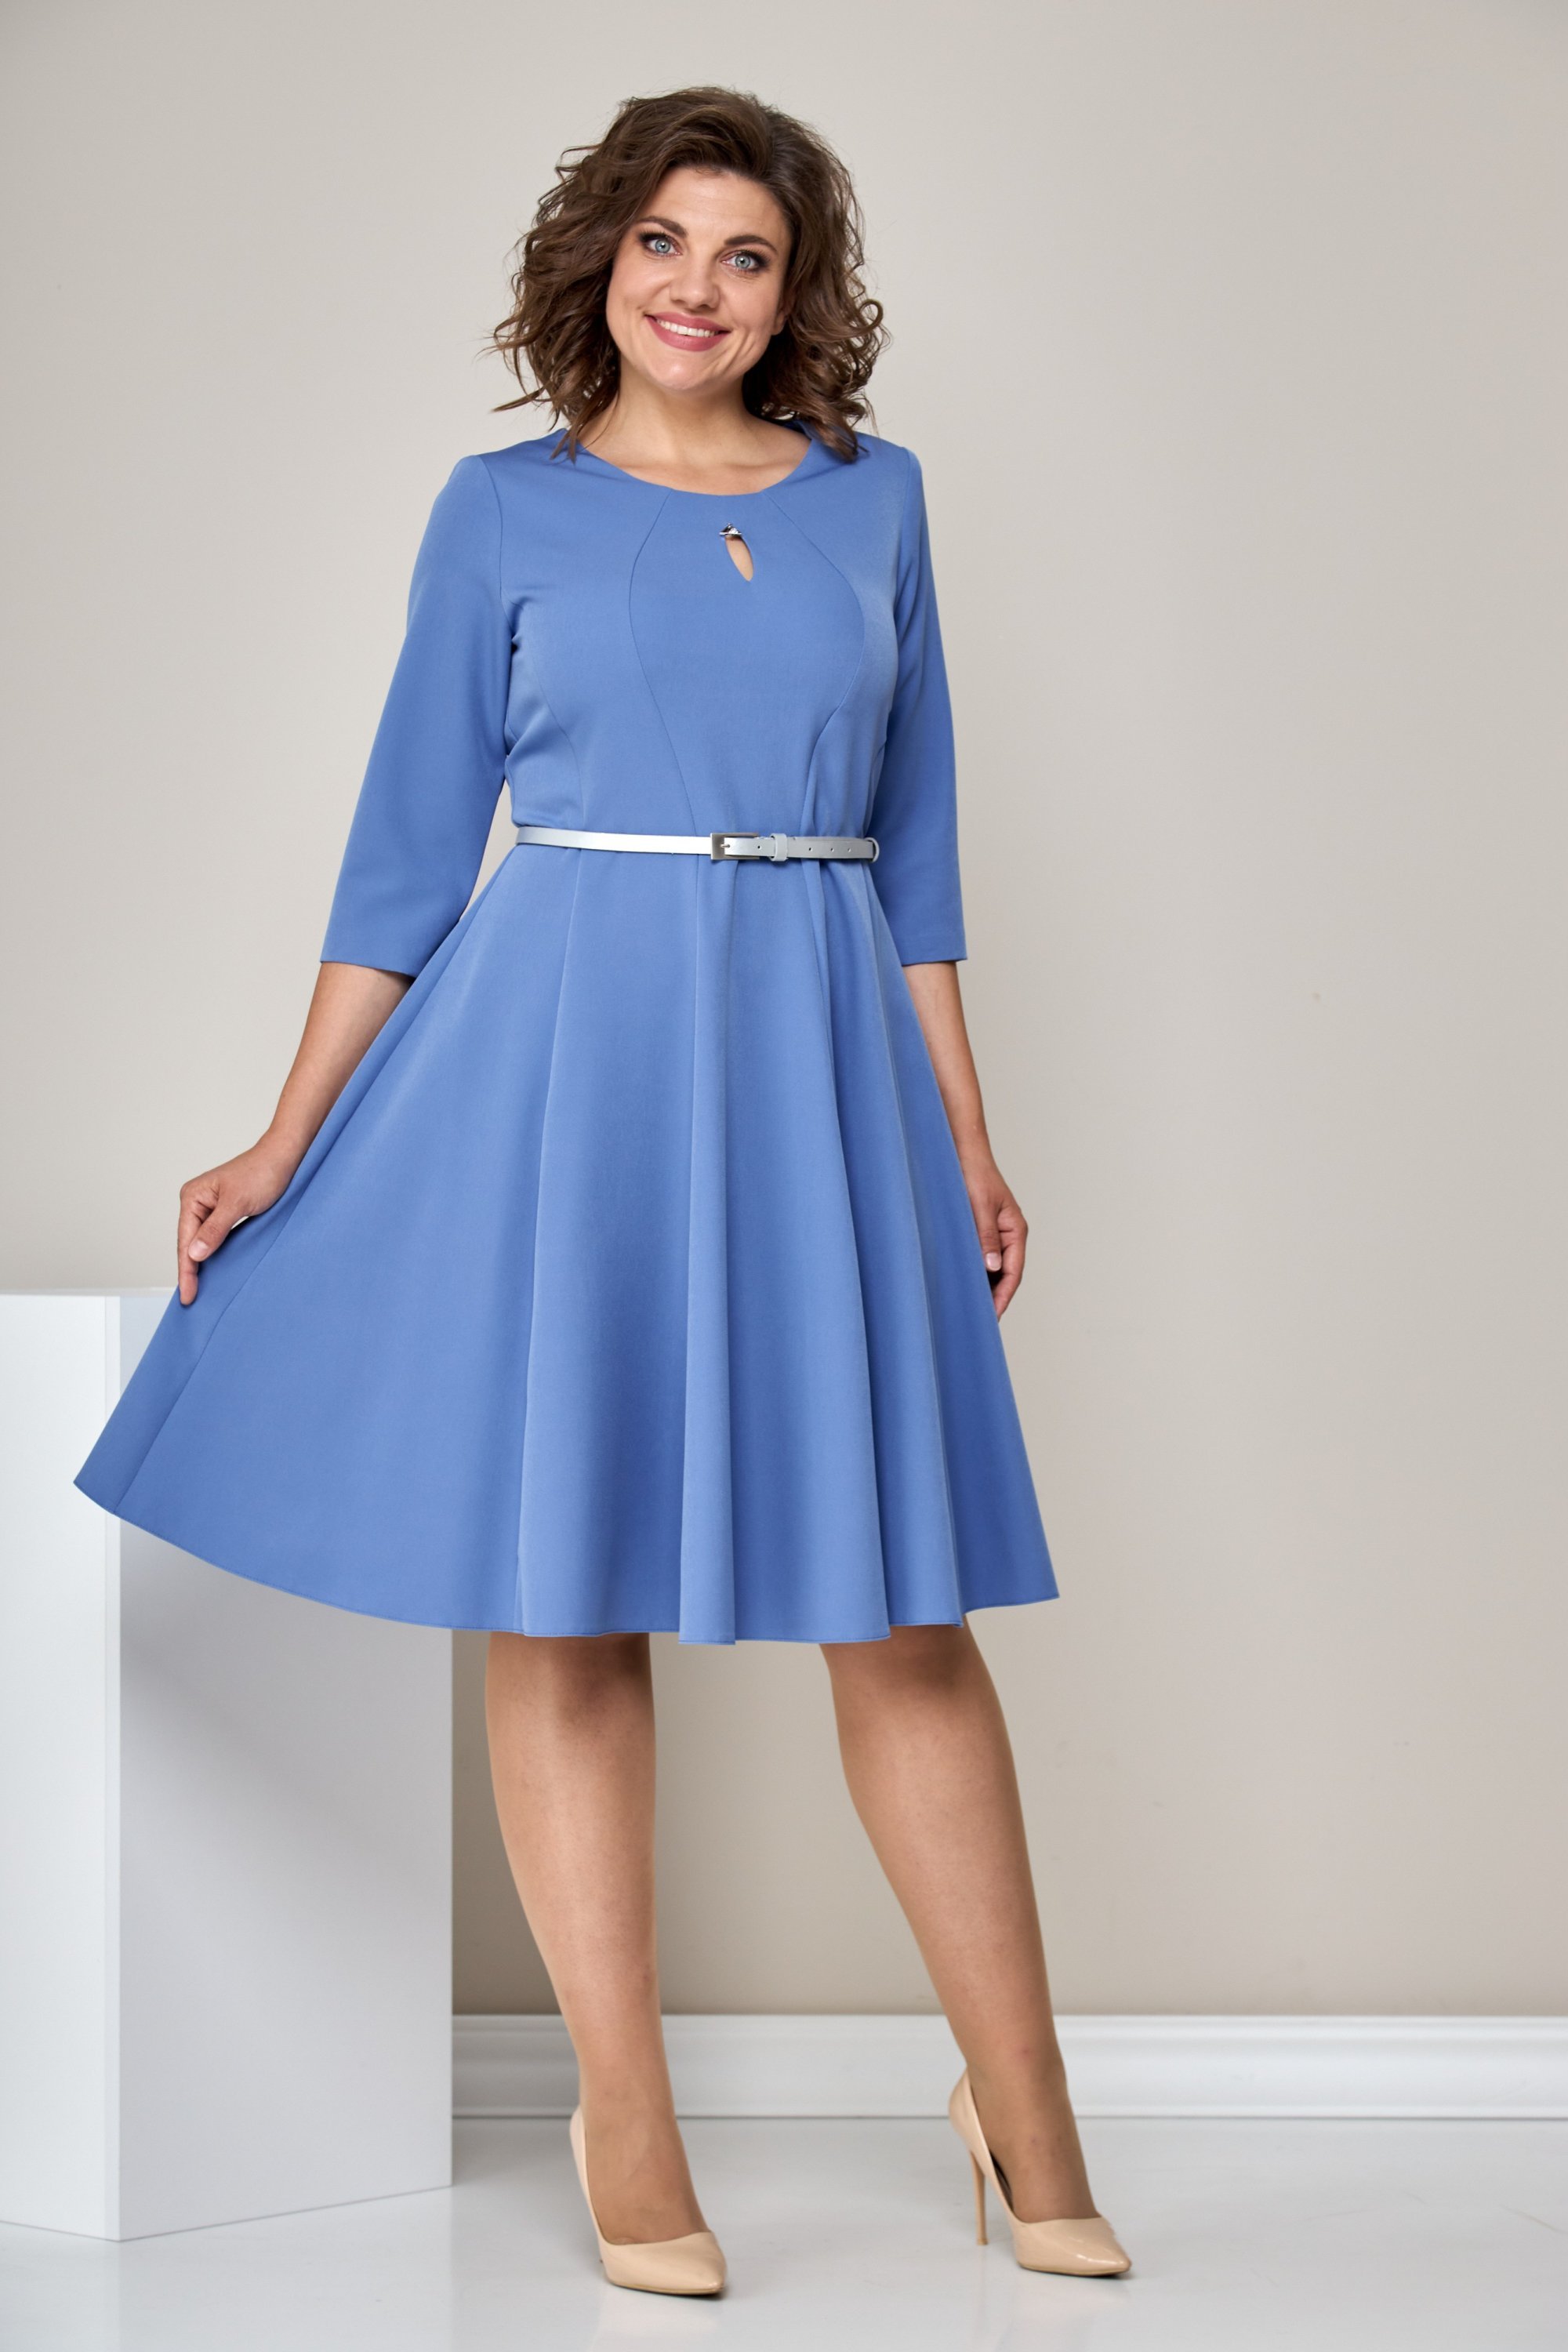 Платье 1601 голубой Moda-Versal